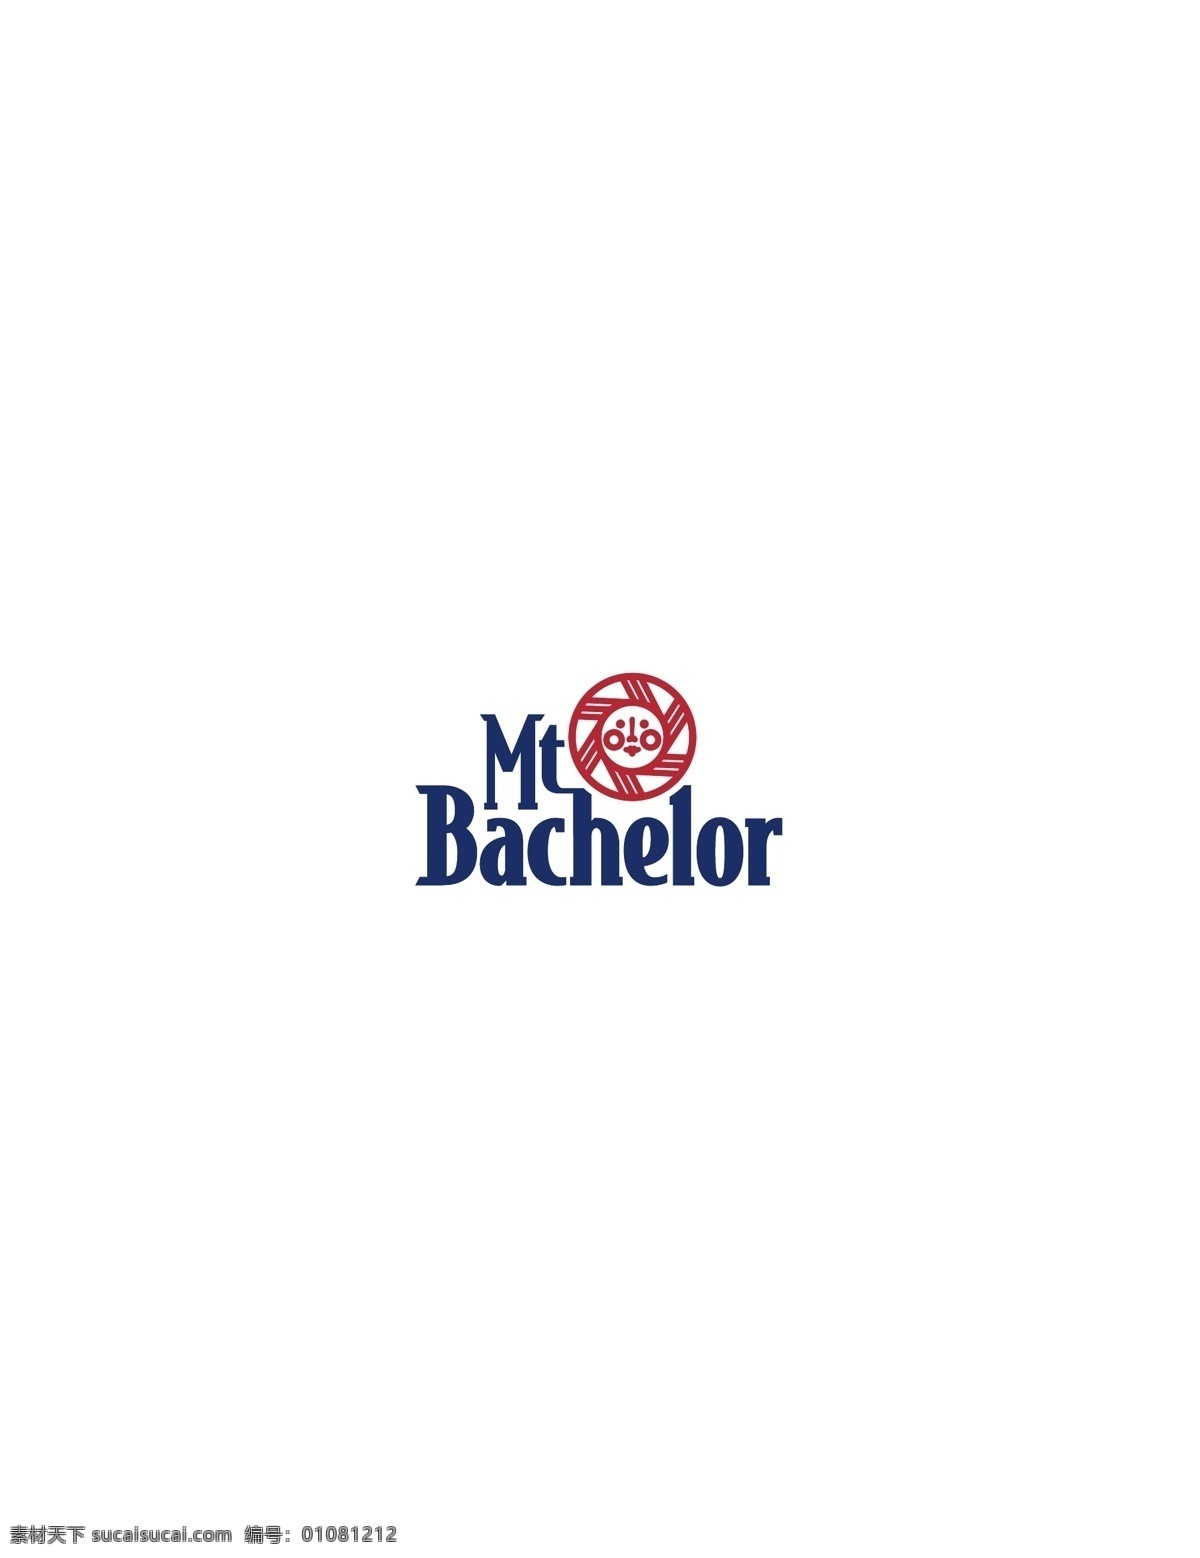 mt bachelor logo 设计欣赏 标志设计 欣赏 矢量下载 网页矢量 商业矢量 logo大全 红色